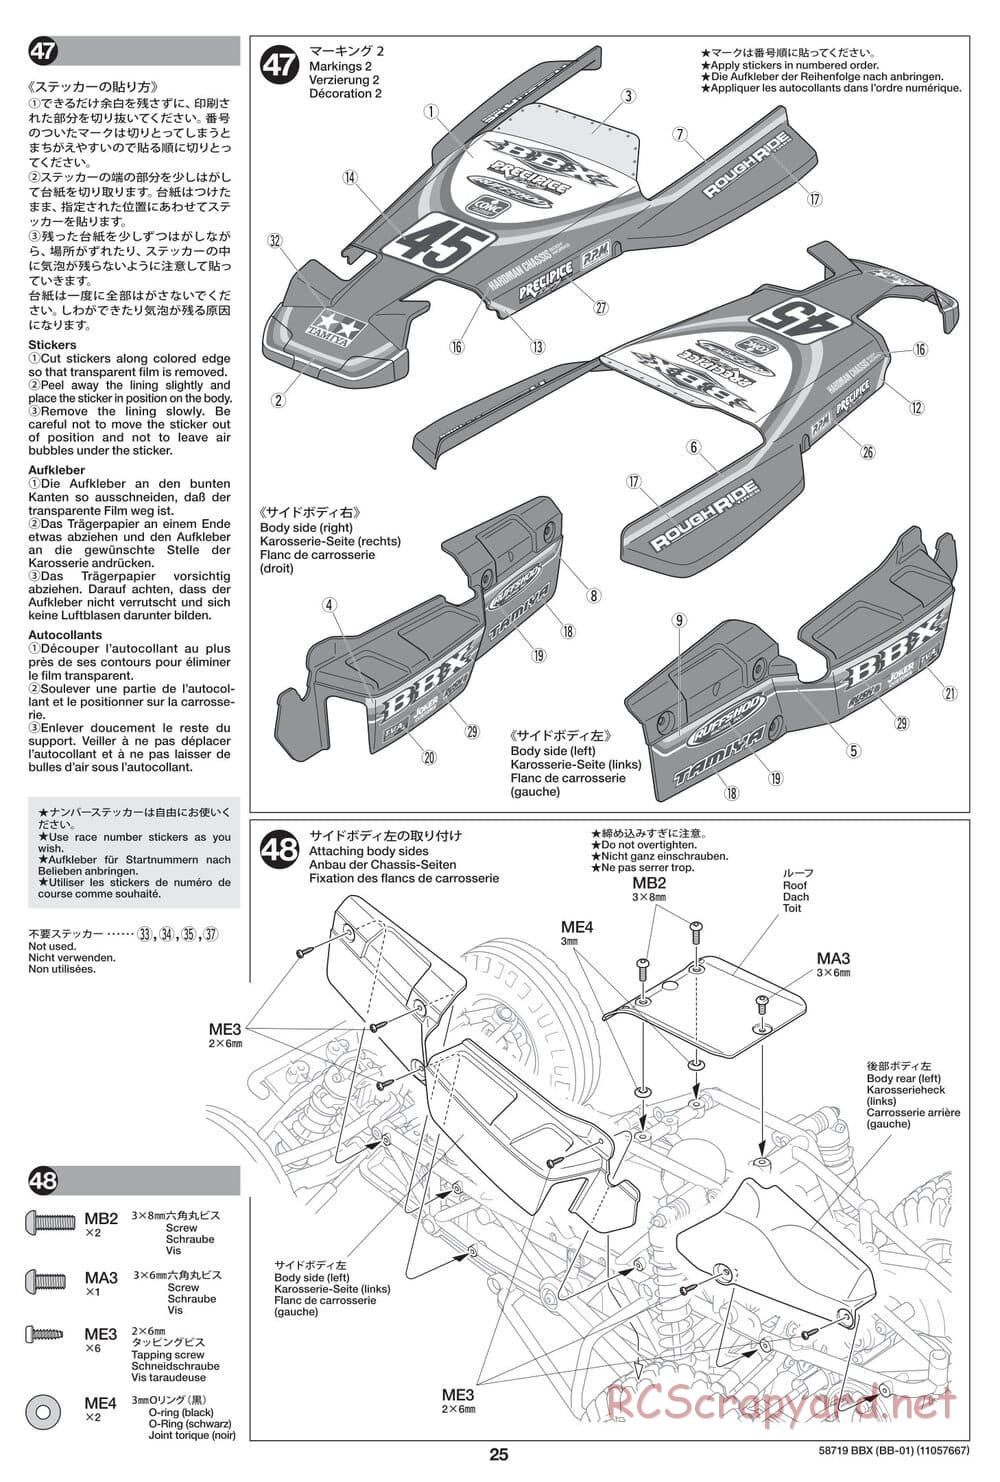 Tamiya - BBX - BB-01 Chassis - Manual - Page 25